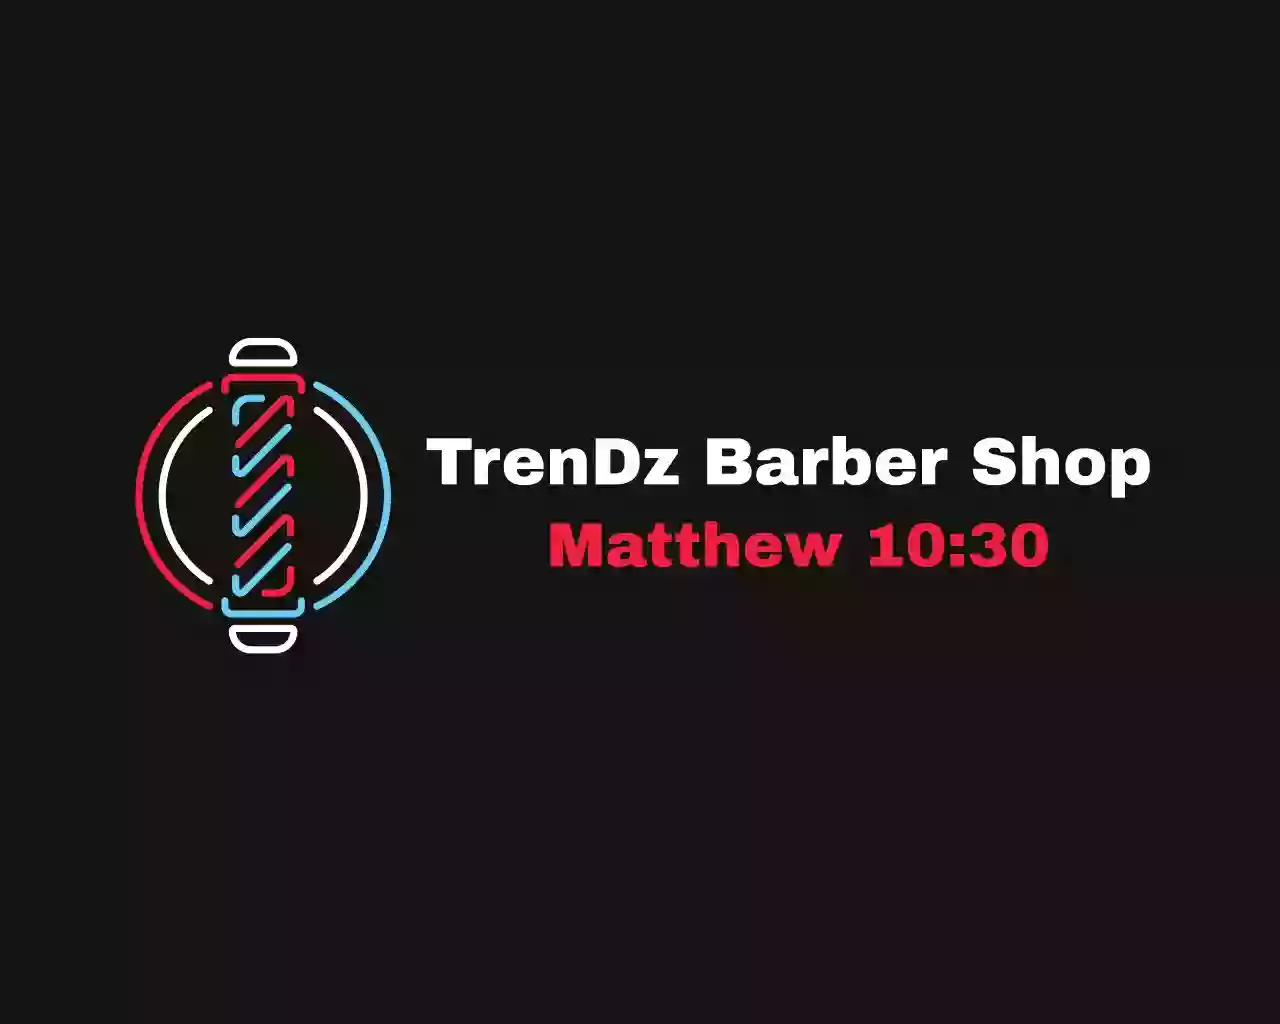 TrenDz Barber Shop